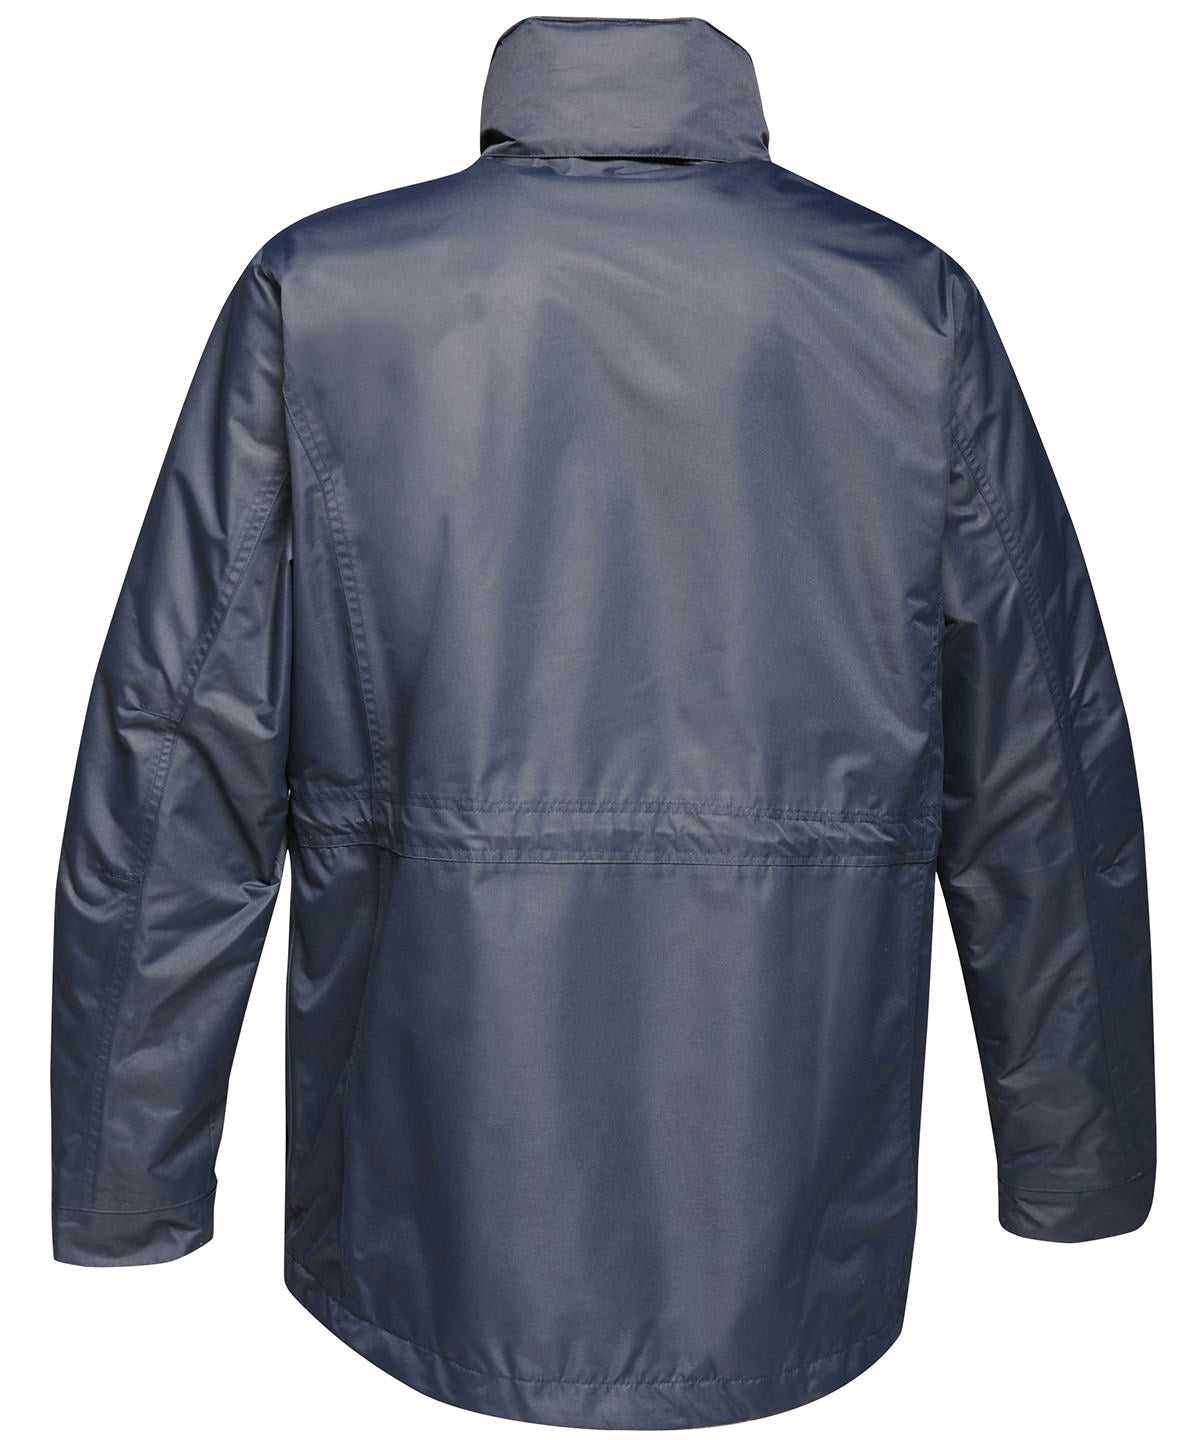 Benson III 3-in-1 jacket